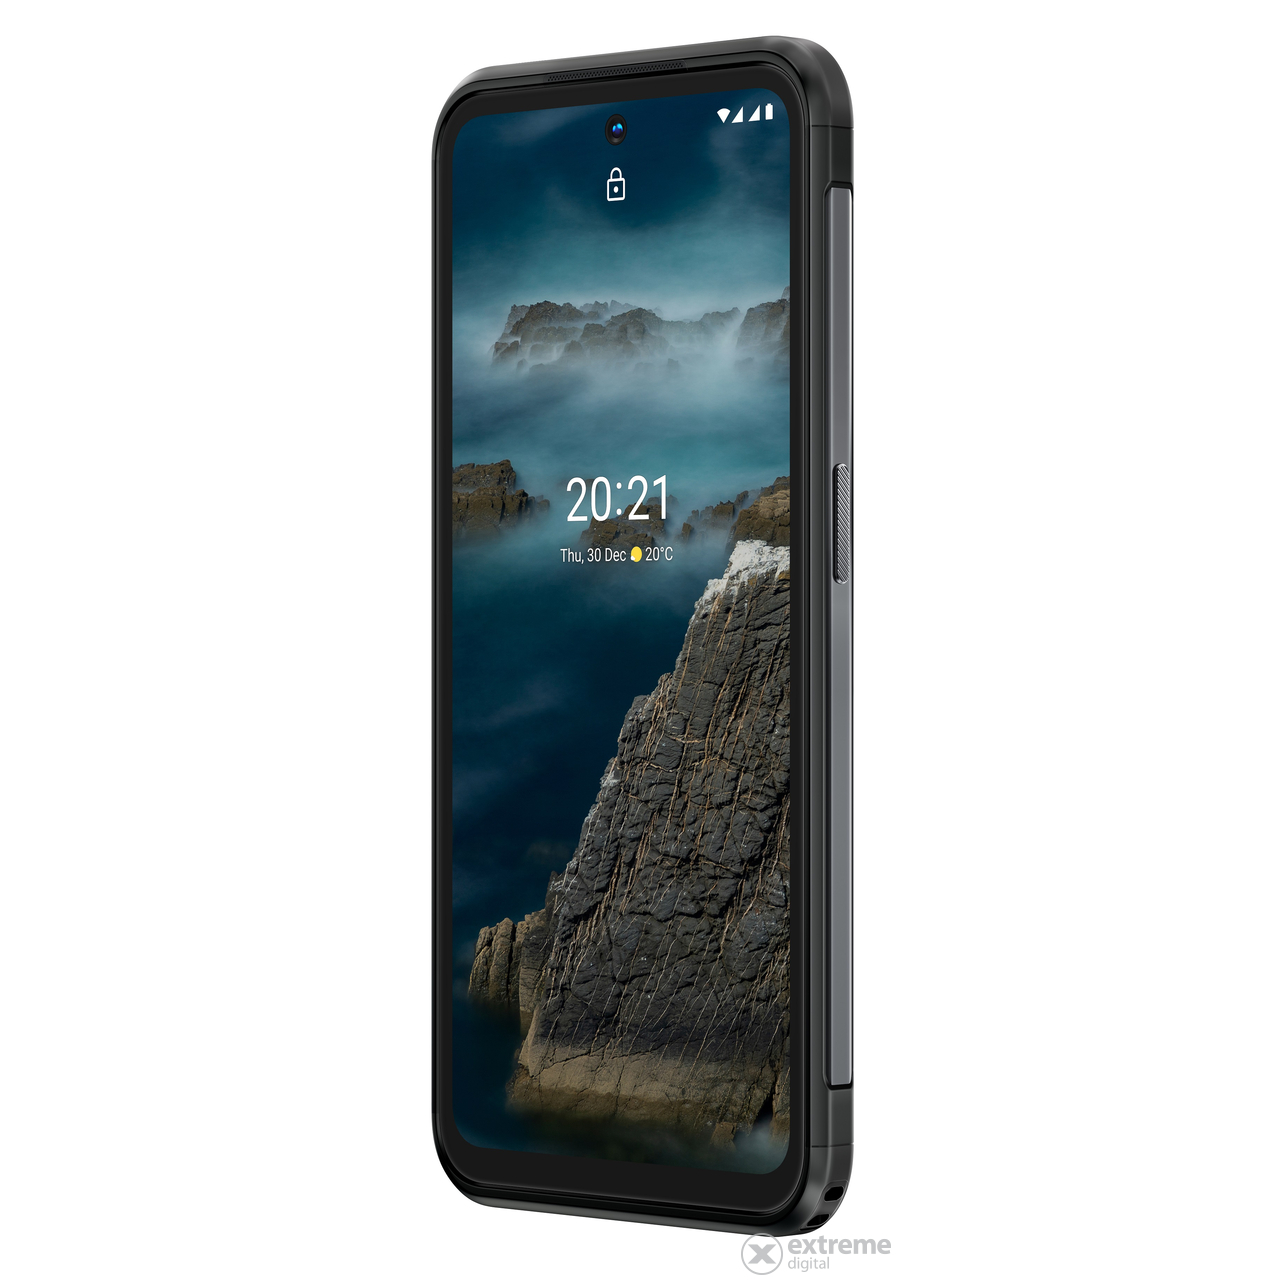 Nokia XR20 6GB/128GB Dual SIM, pametni telefon, sivi (Android)